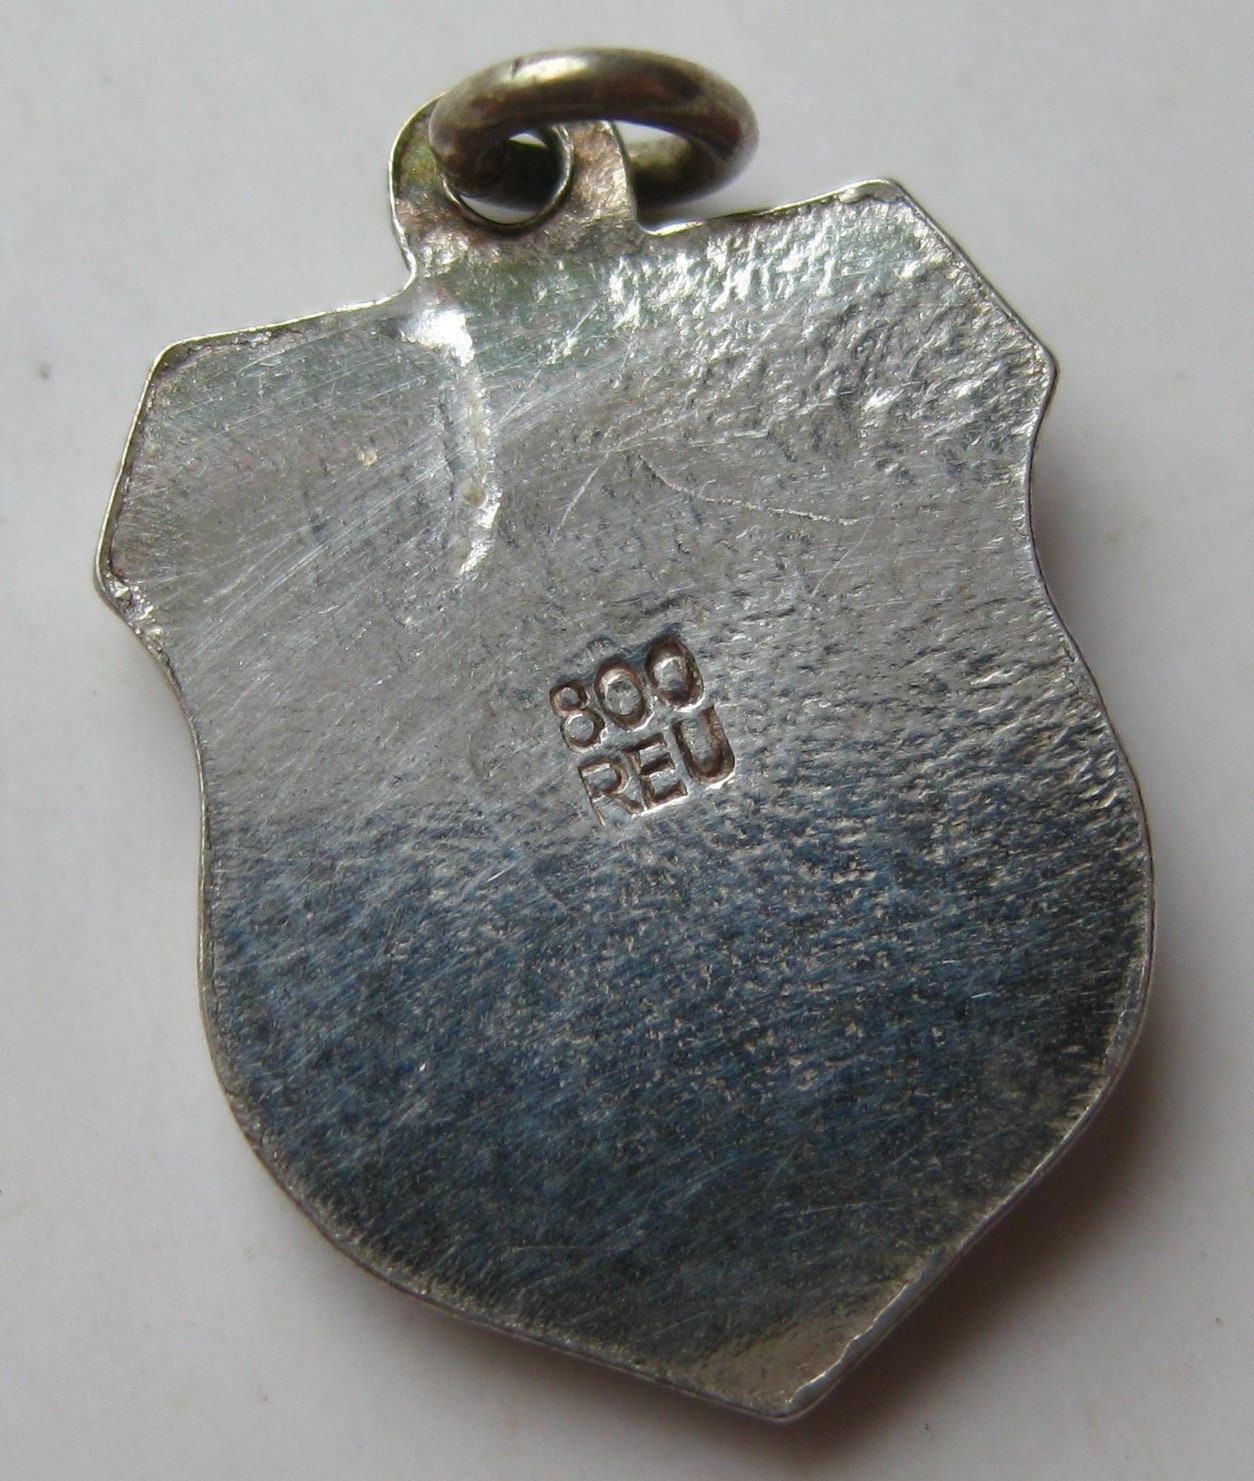 800 Silver & Enamel BERCHTESGADEN Charm - Travel Shield - Souvenir